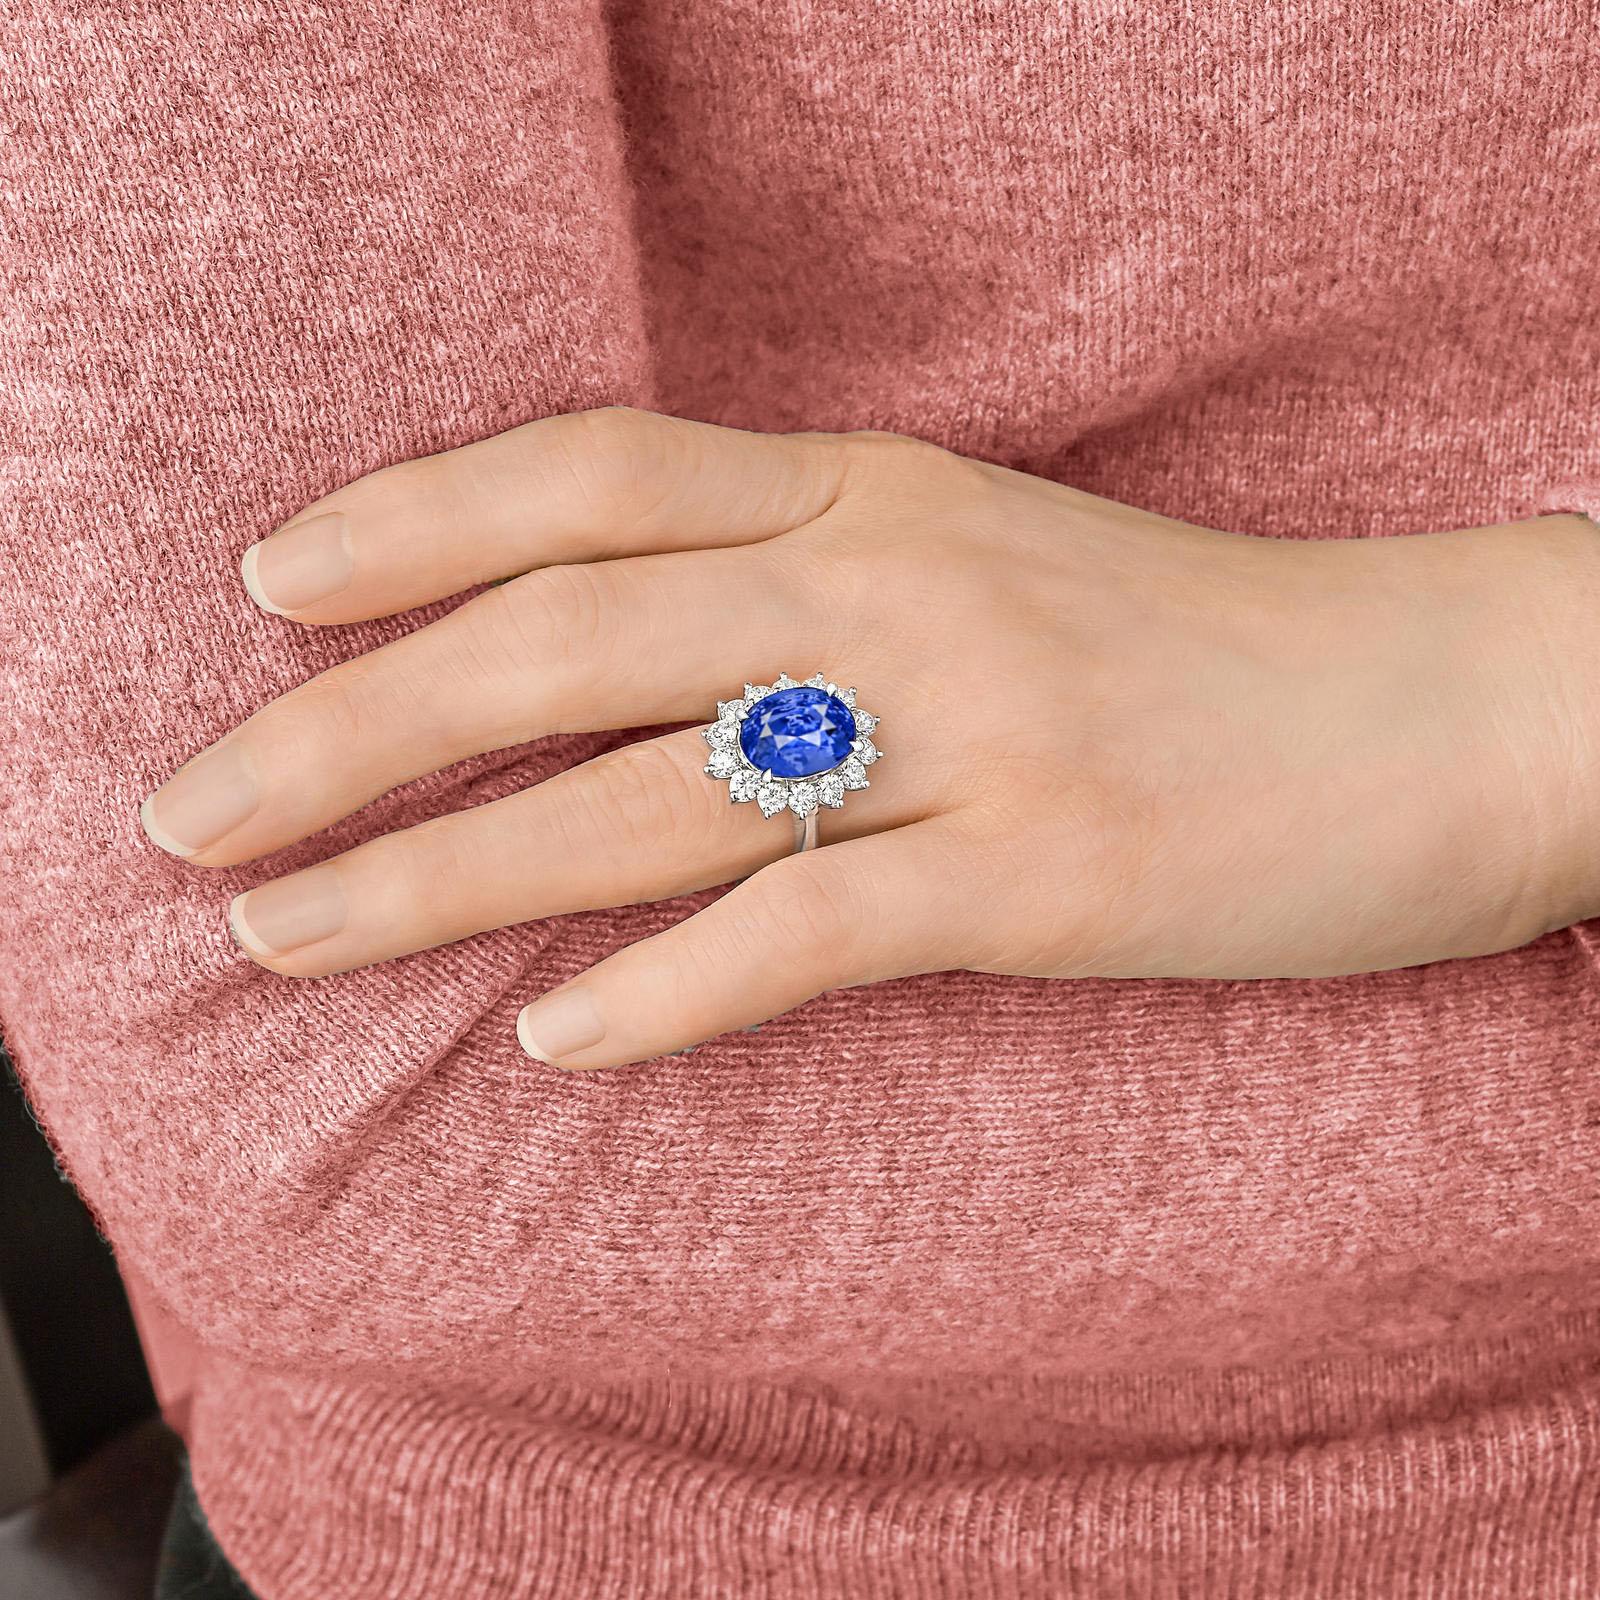 Voici une pièce de joaillerie fine vraiment extraordinaire : la bague saphir diamant certifié GIA de 5 carats bleu intense de BOURMESE sans chaleur.

Plongez dans l'allure captivante de cette bague exquise, ornée d'un saphir bleu birman sans chaleur